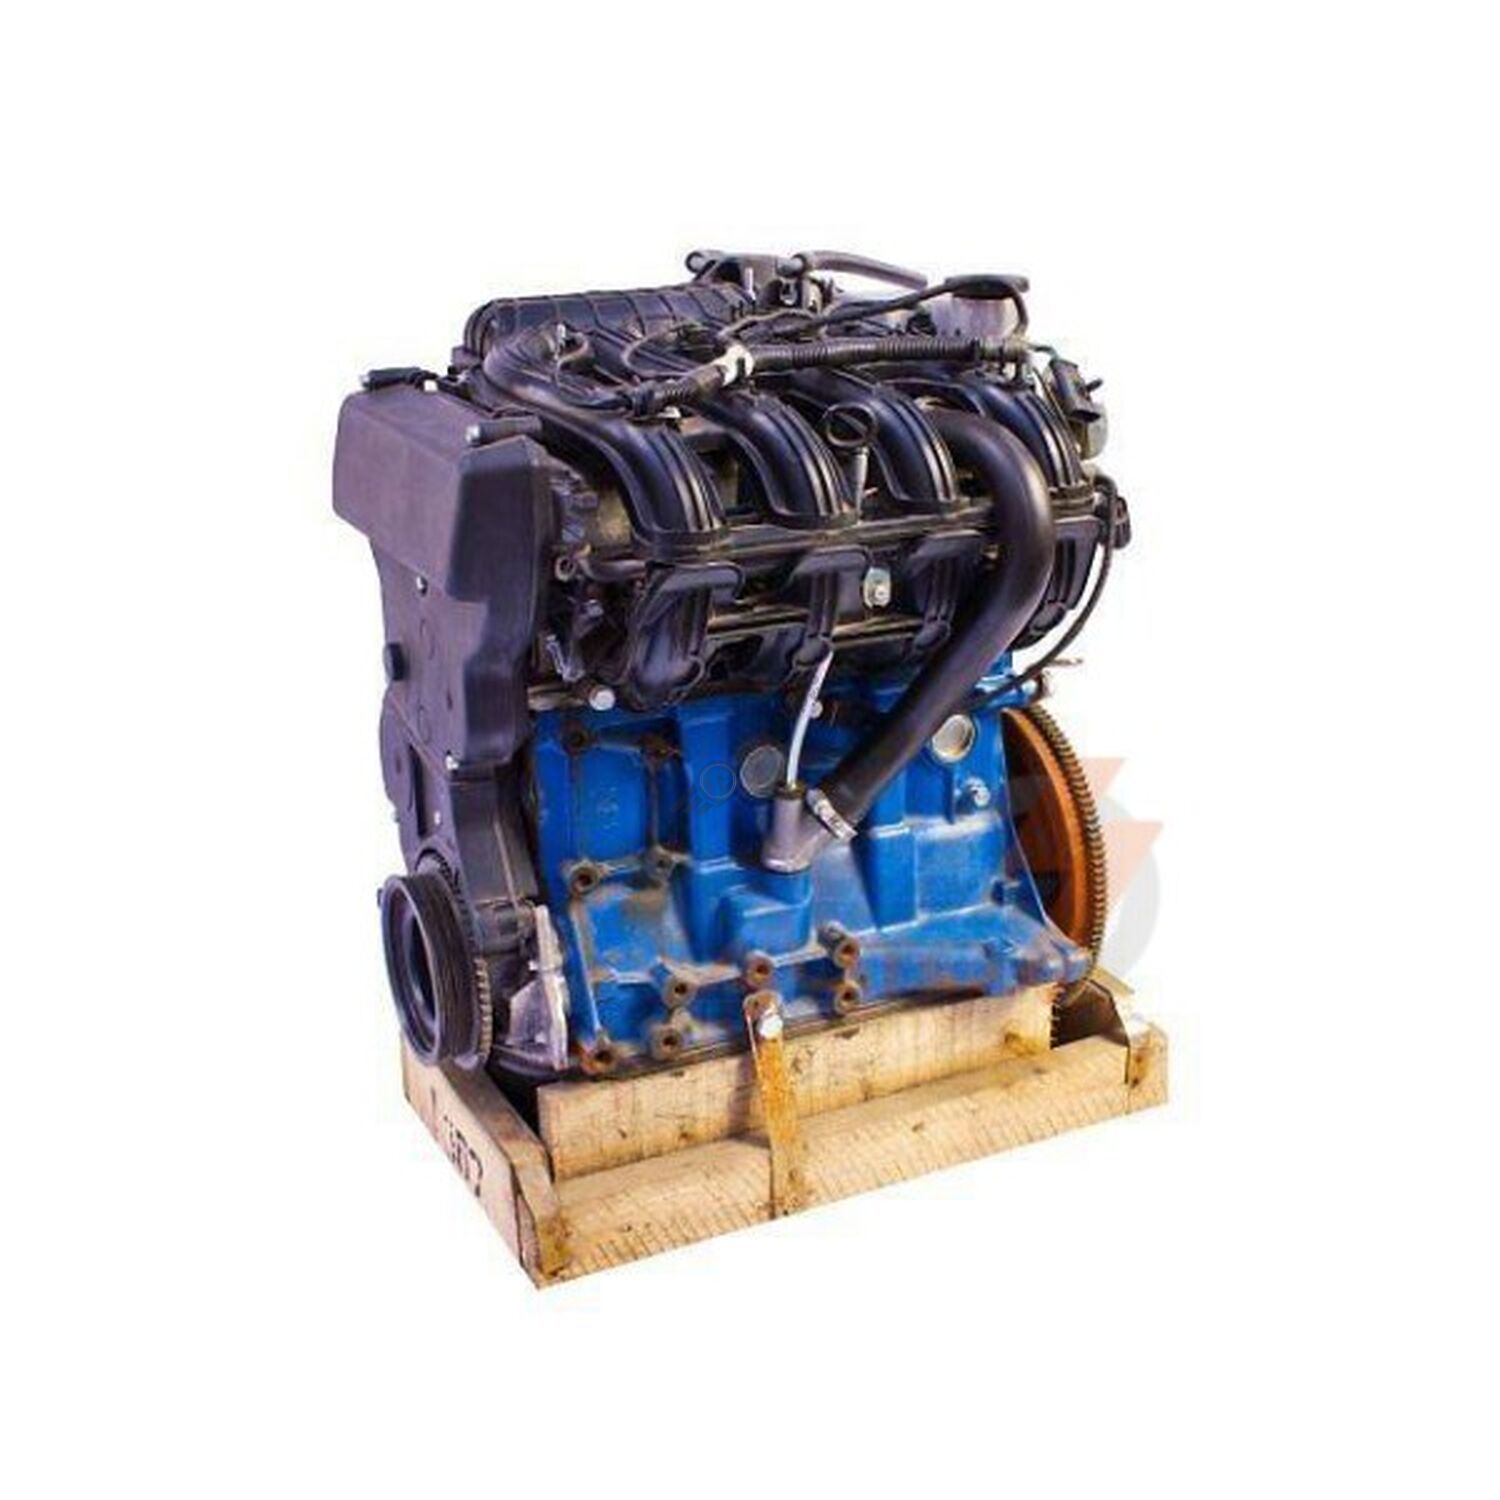 Шестнадцать клапанов. Мотор ВАЗ 11194. Двигатель 11194 1.4 16 клапанов. Двигатель ВАЗ 11194 1.4 16кл. Мотор 11194 мотор ВАЗ.